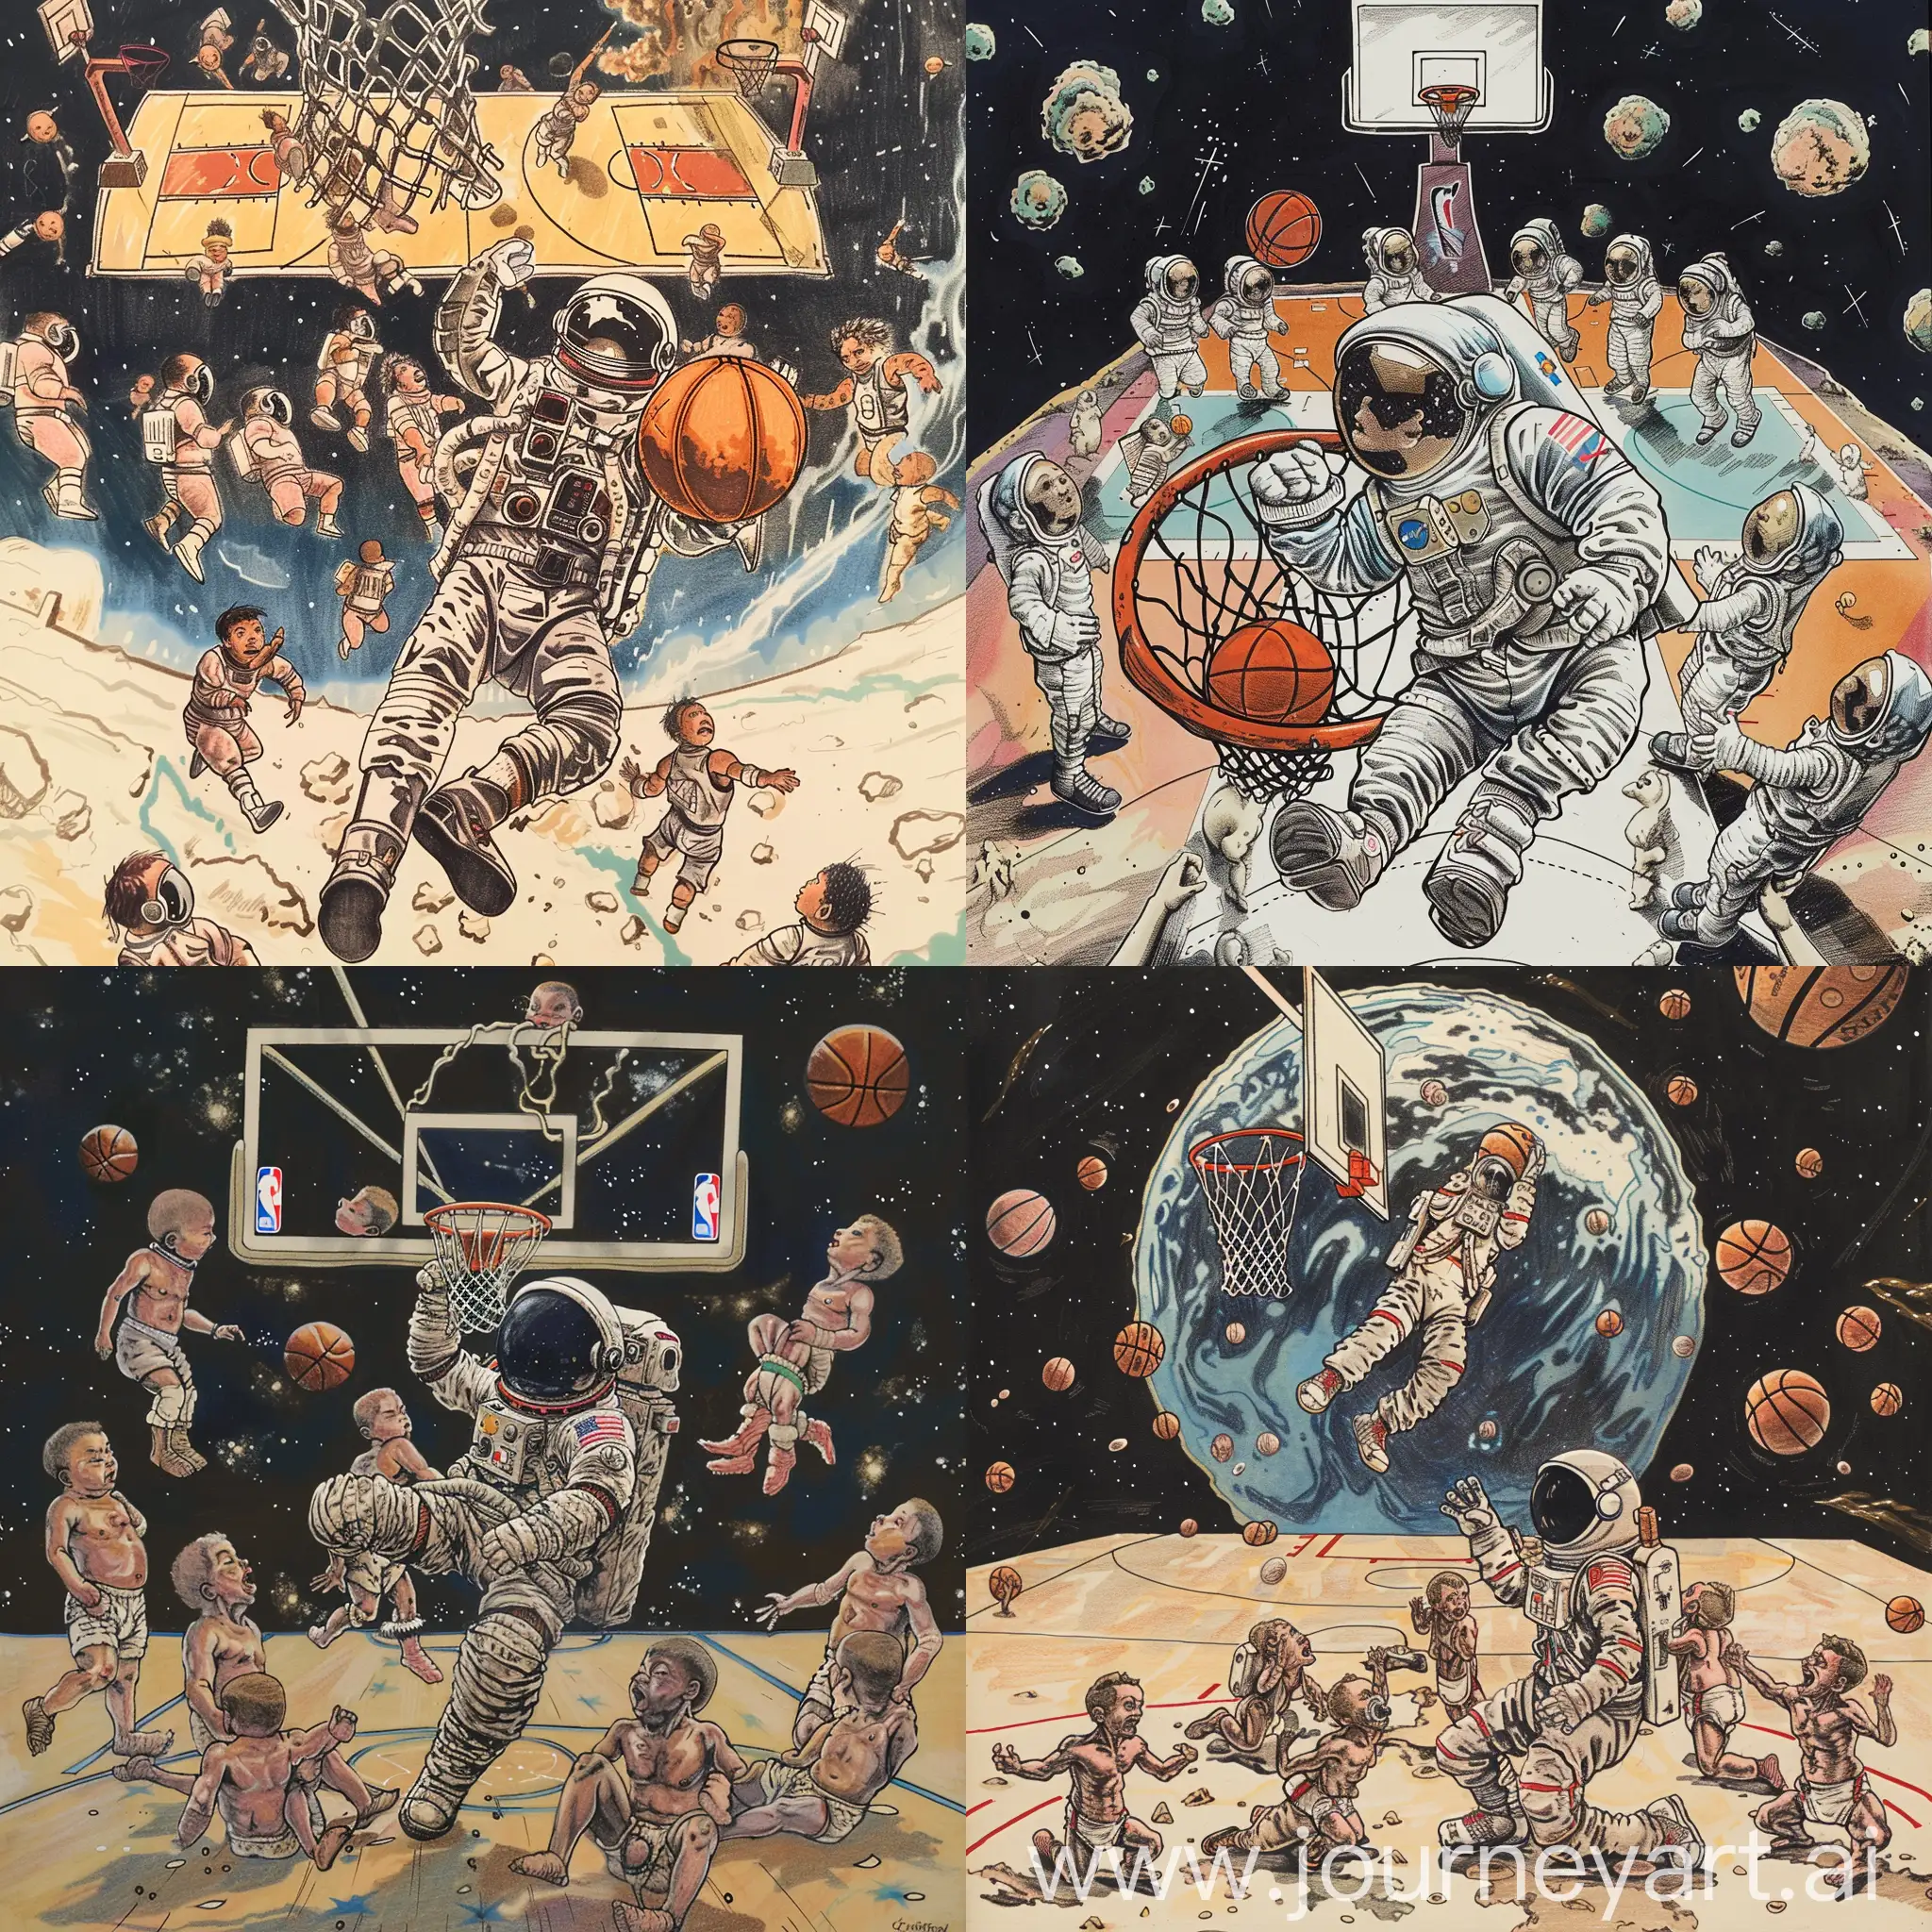 Maak een tekening van astronaut die door de ruimte zweeft en dunkt op een basketbaldgoal die daar zweeft Op de achter grond zie je een basketbalveld waar eer 10 baby’s aan het basketballen zijn ze dunken, doen lat ups maken driepunters…